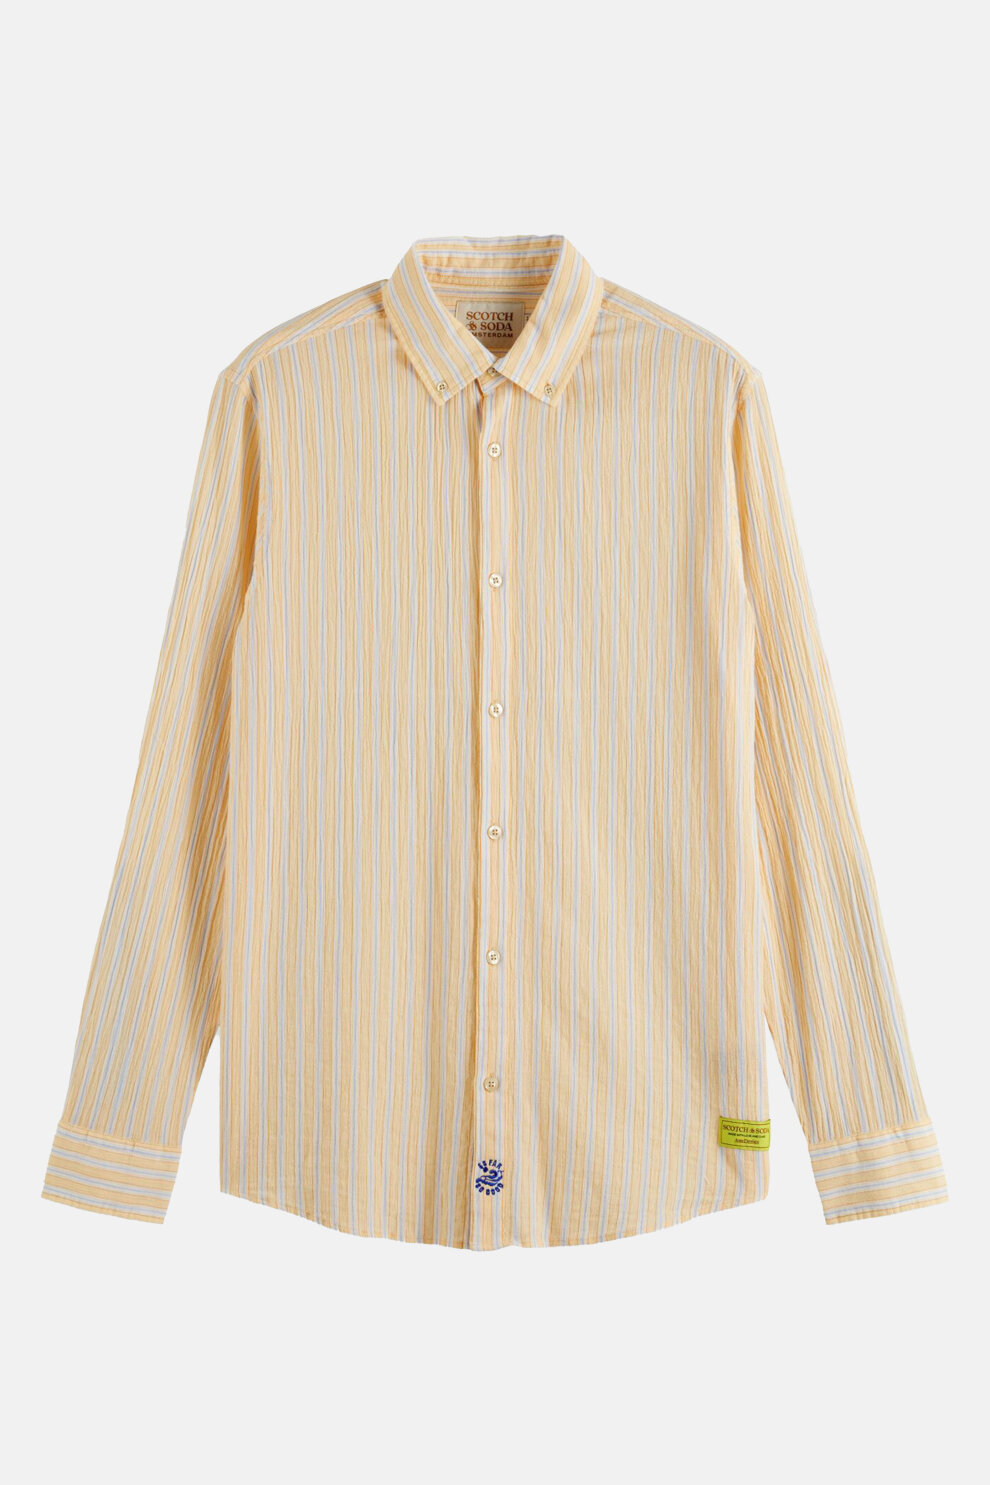 MUŠKARCI - Košulje - Scotch & Soda košulja - Dugi rukavi - Žuta